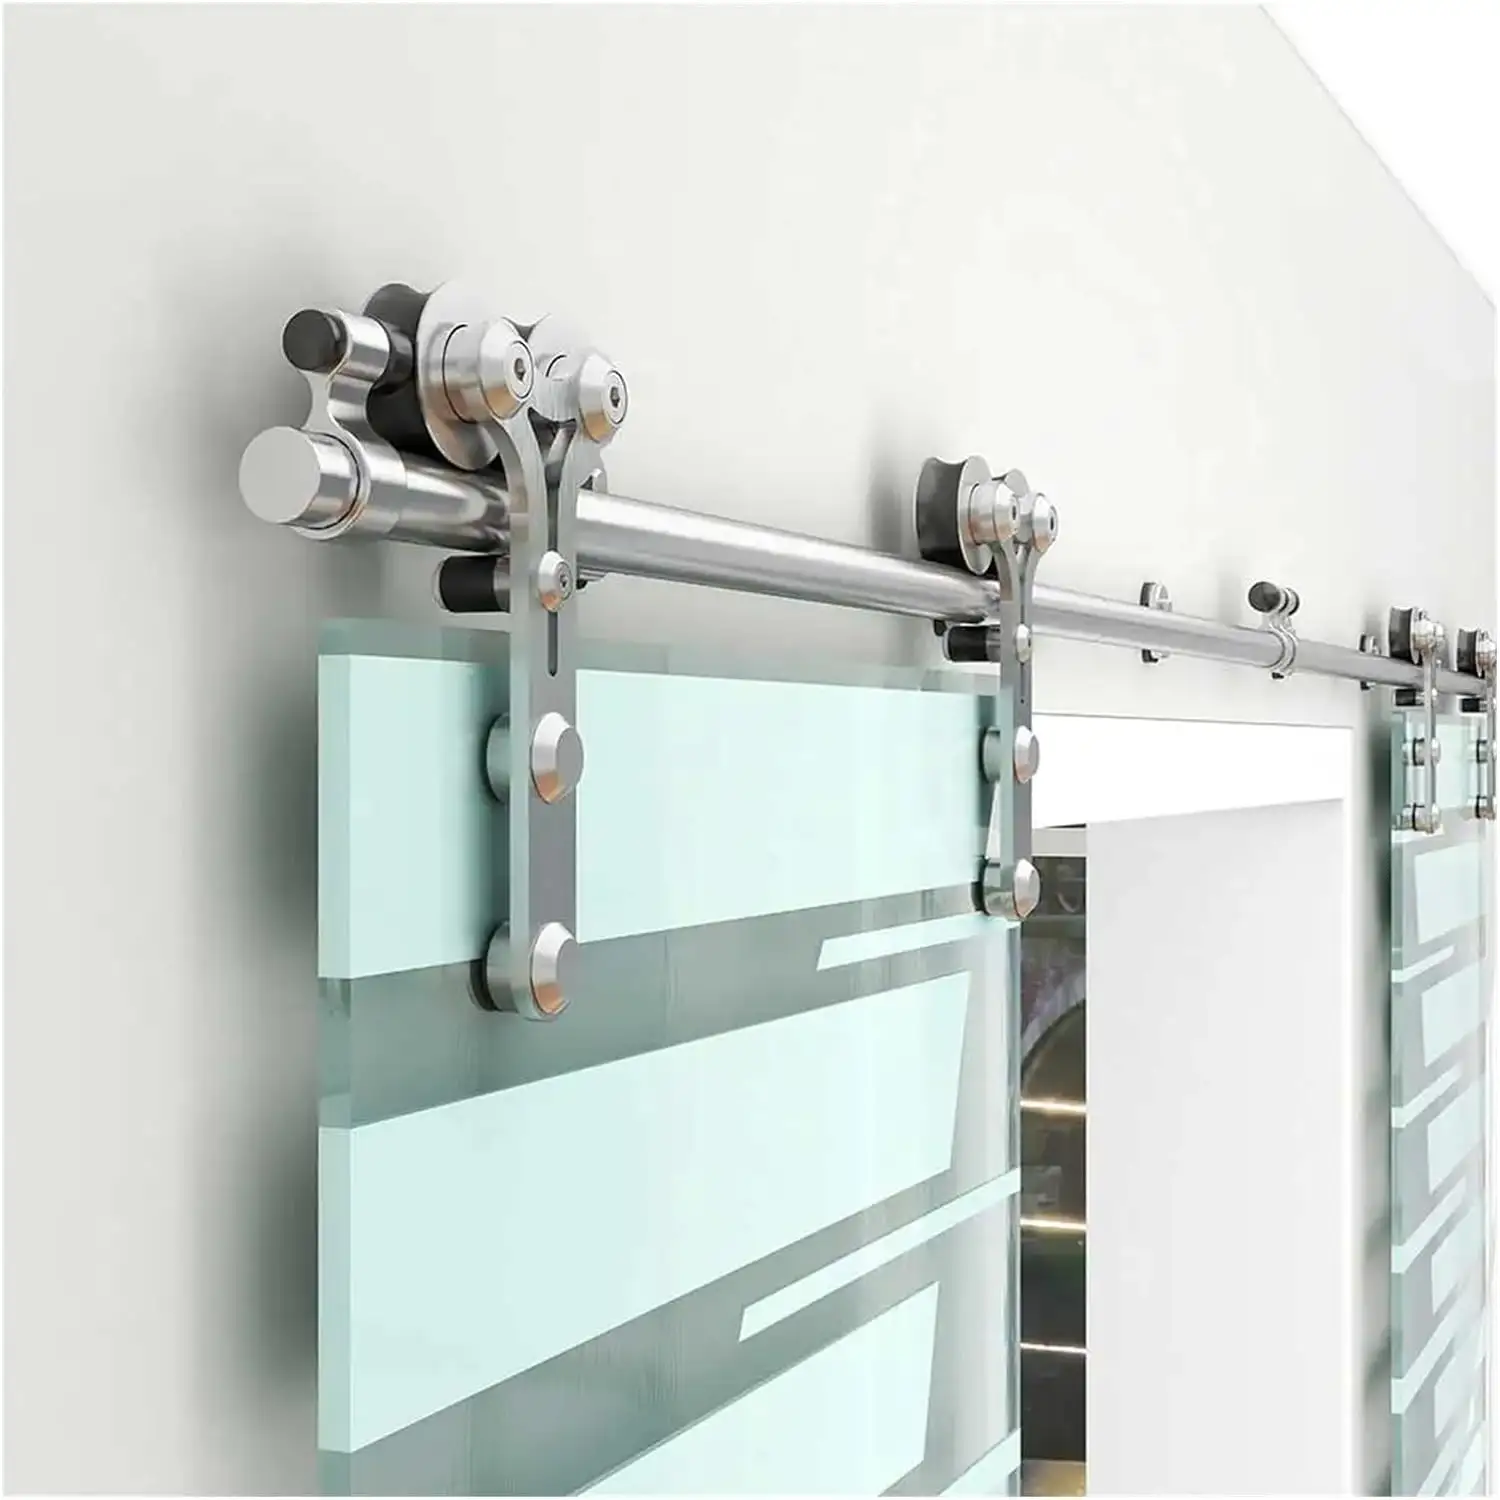 Bathroom Fittings Bypass Stainless Steel Rollers Hanging Wheel Rail Track Sliding Barn Shower Frameless Glass Door Hardware Kits